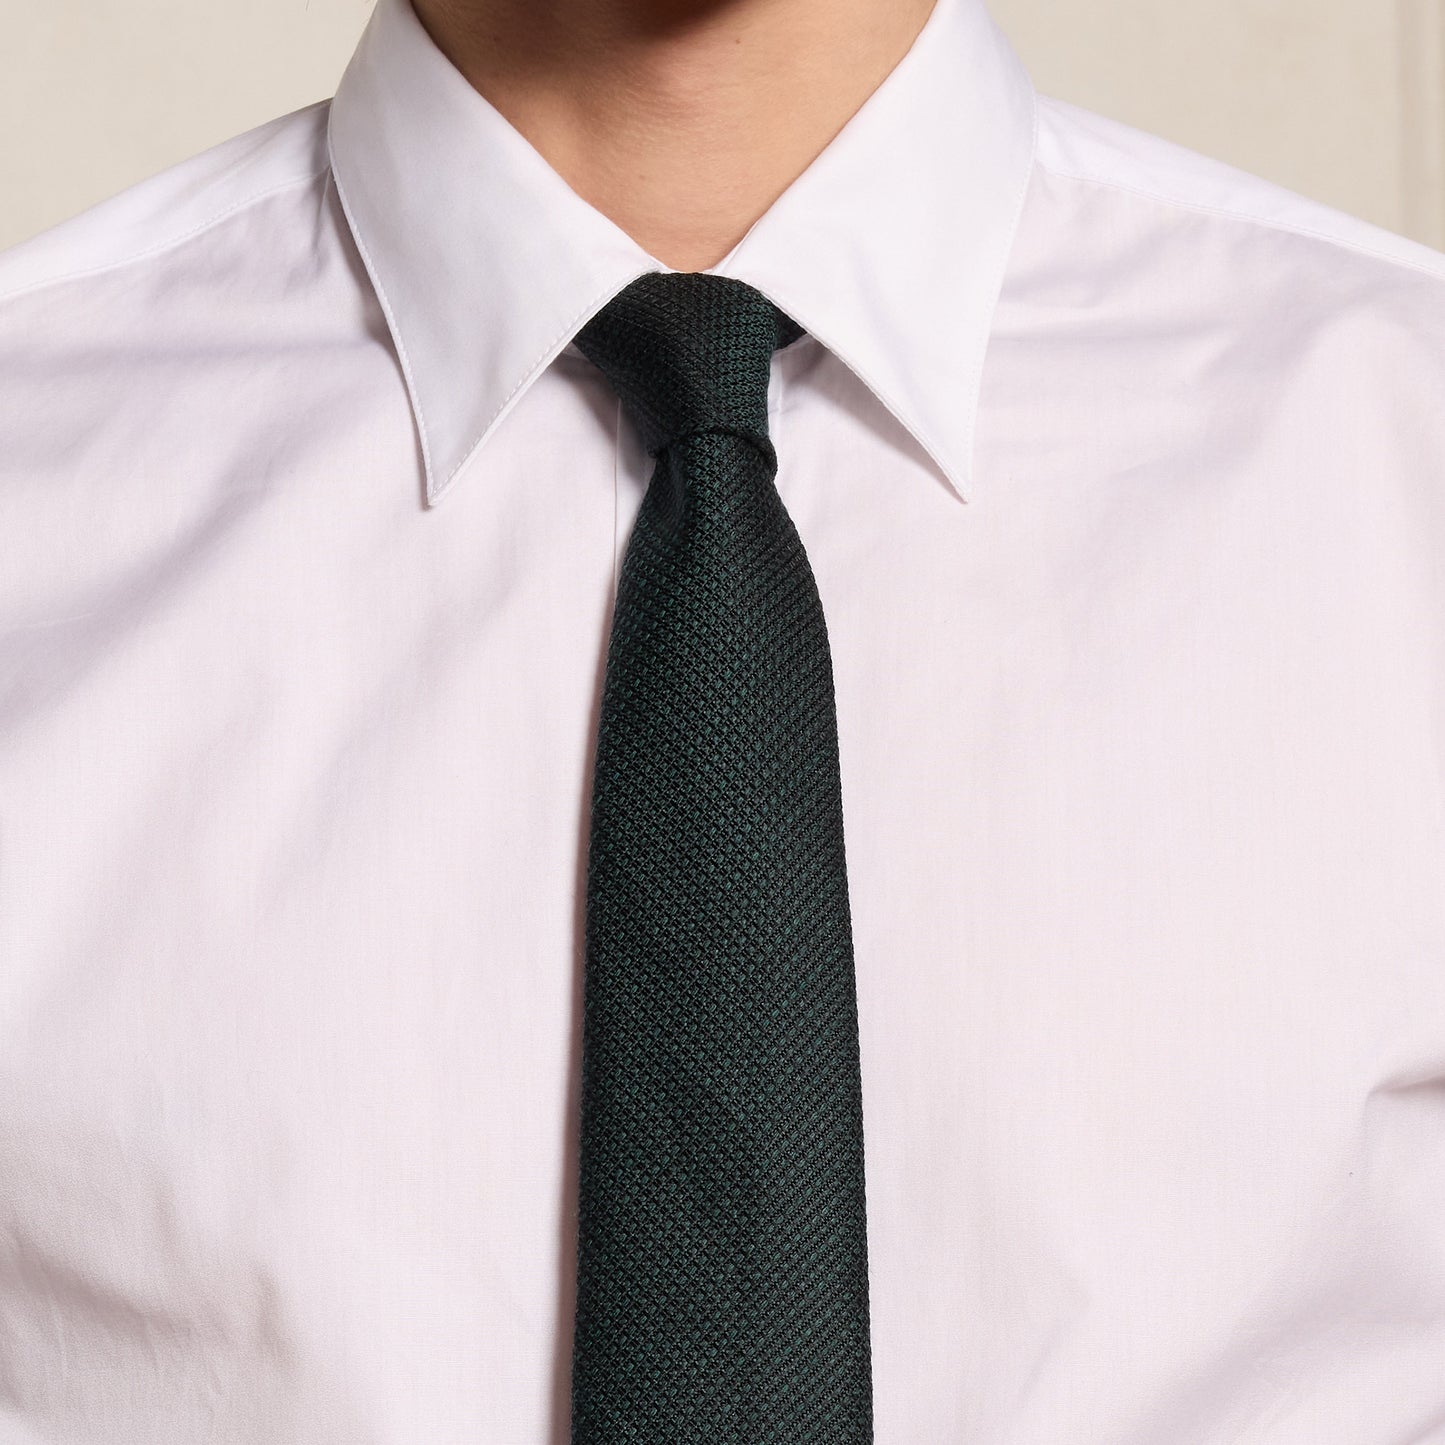 Cravate tissée verte